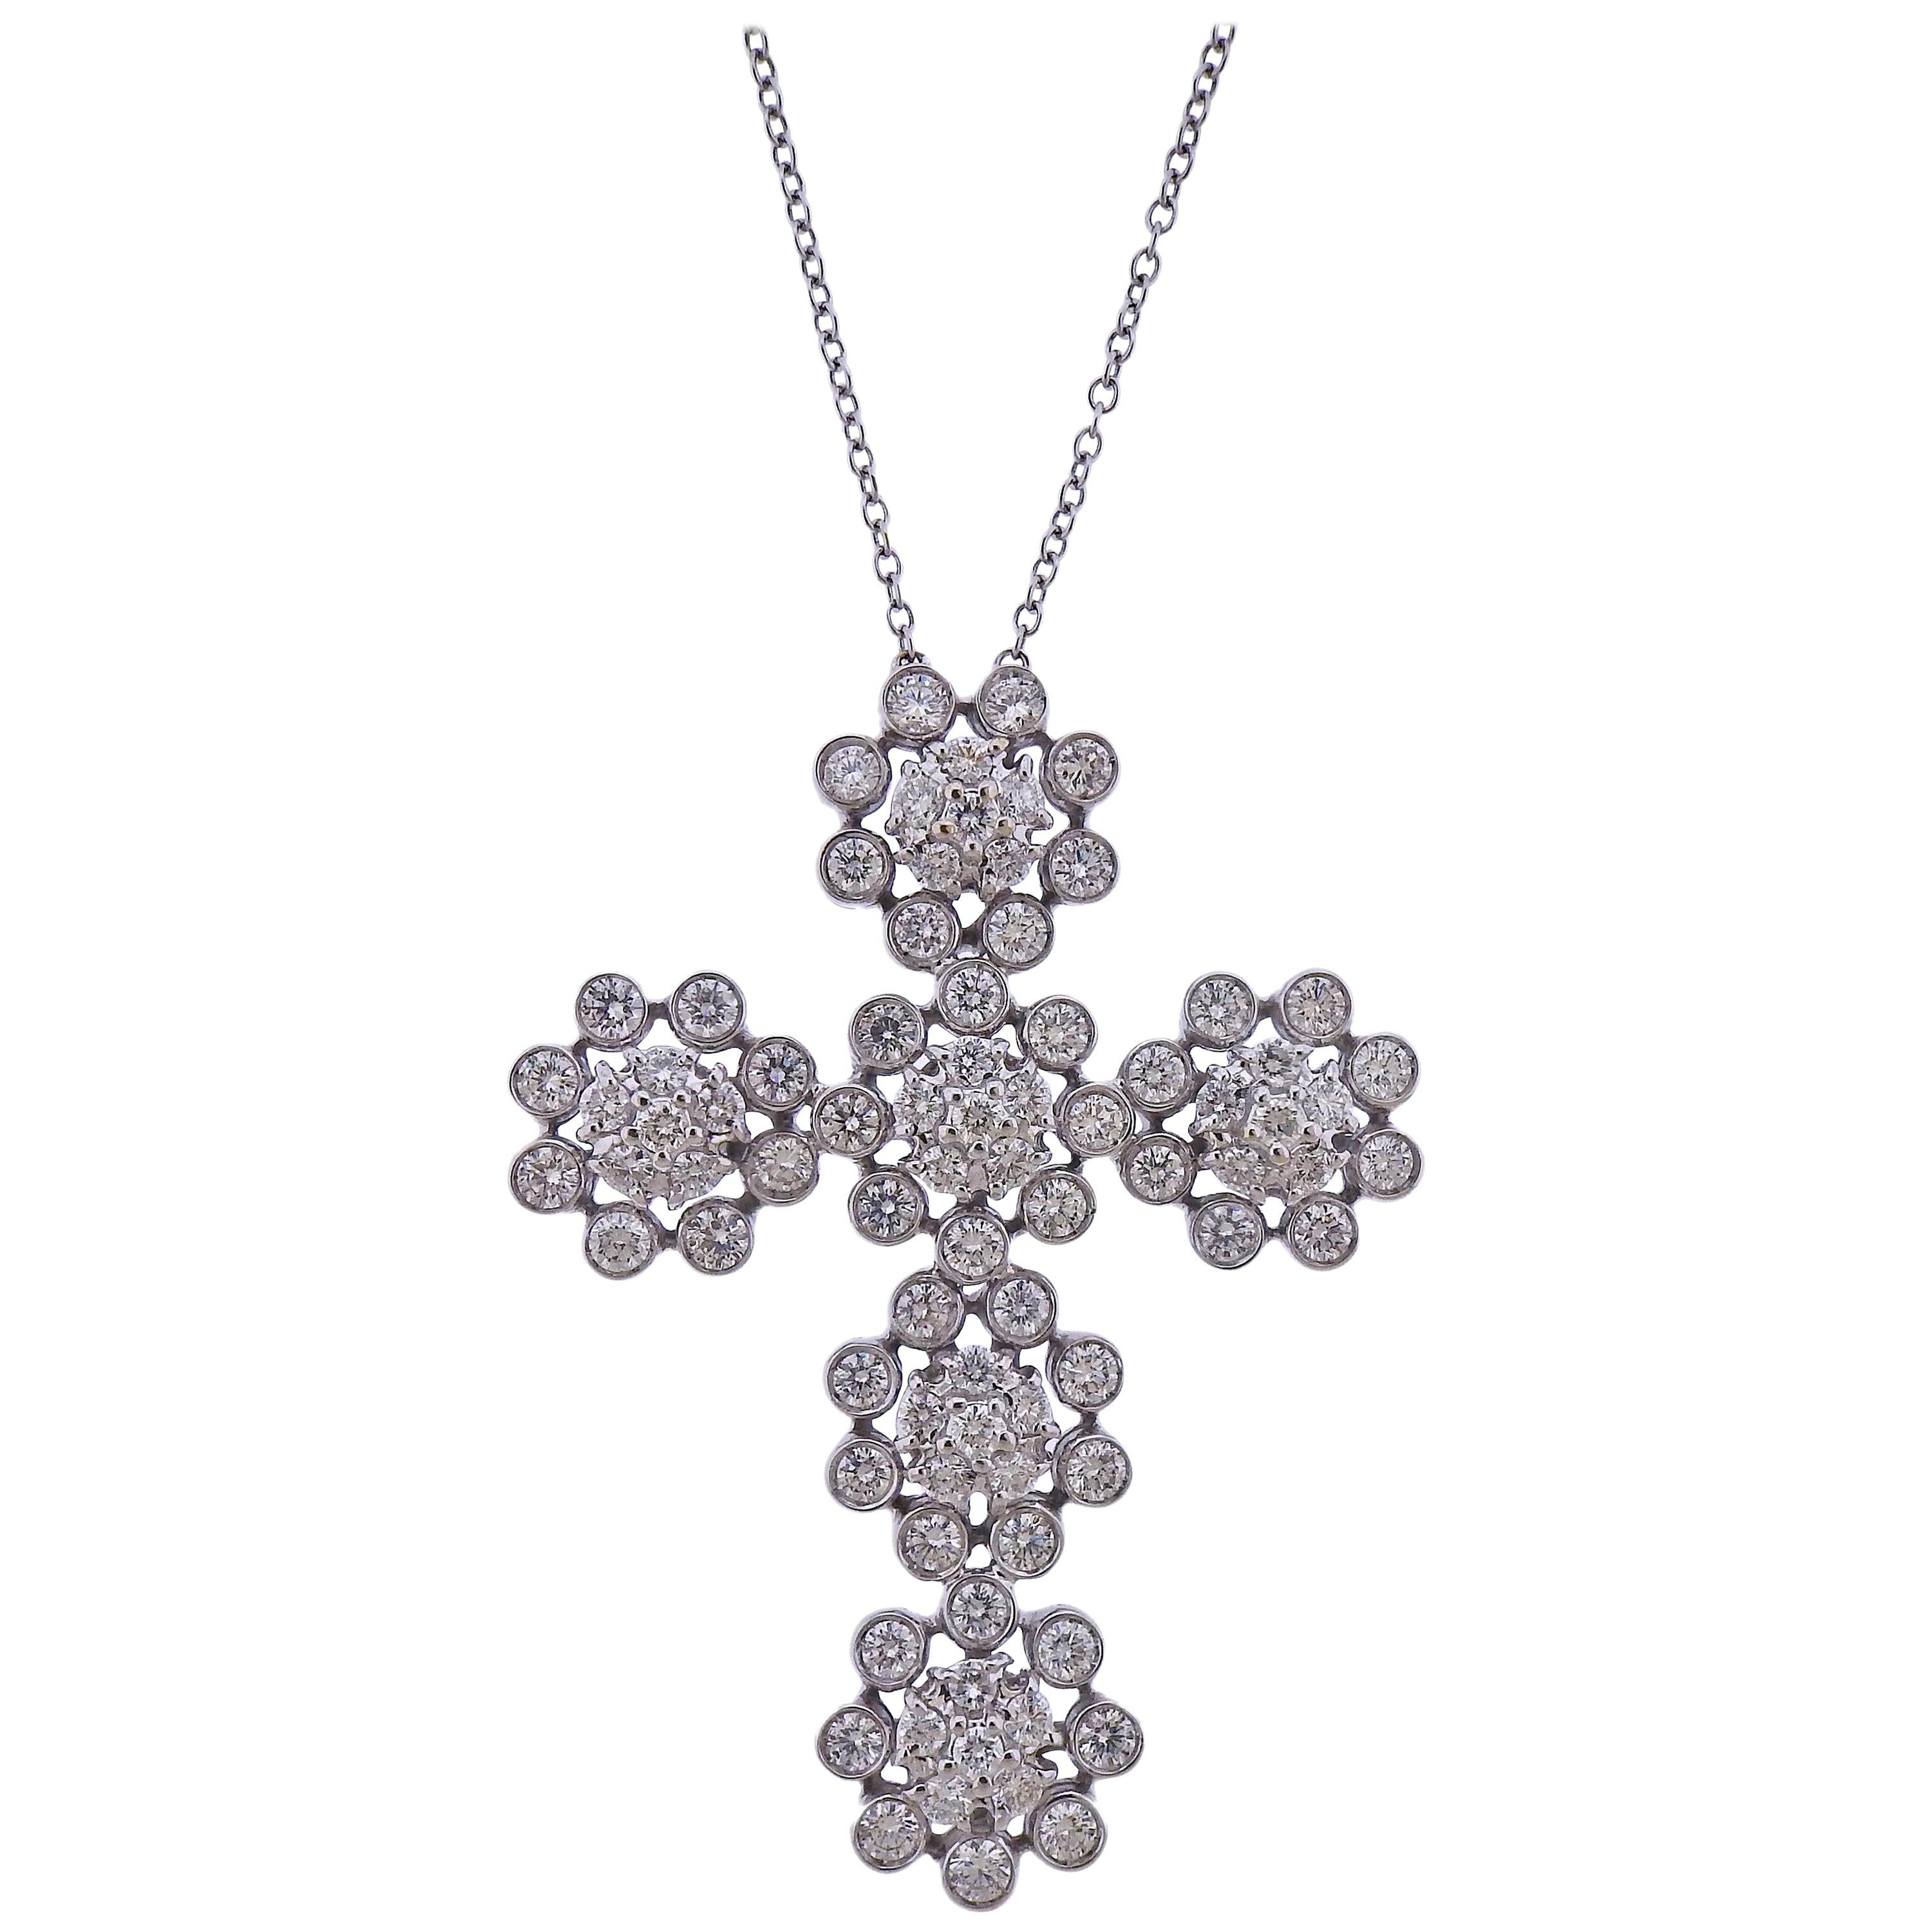 8 Carat Diamond Gold Cross Pendant Necklace For Sale